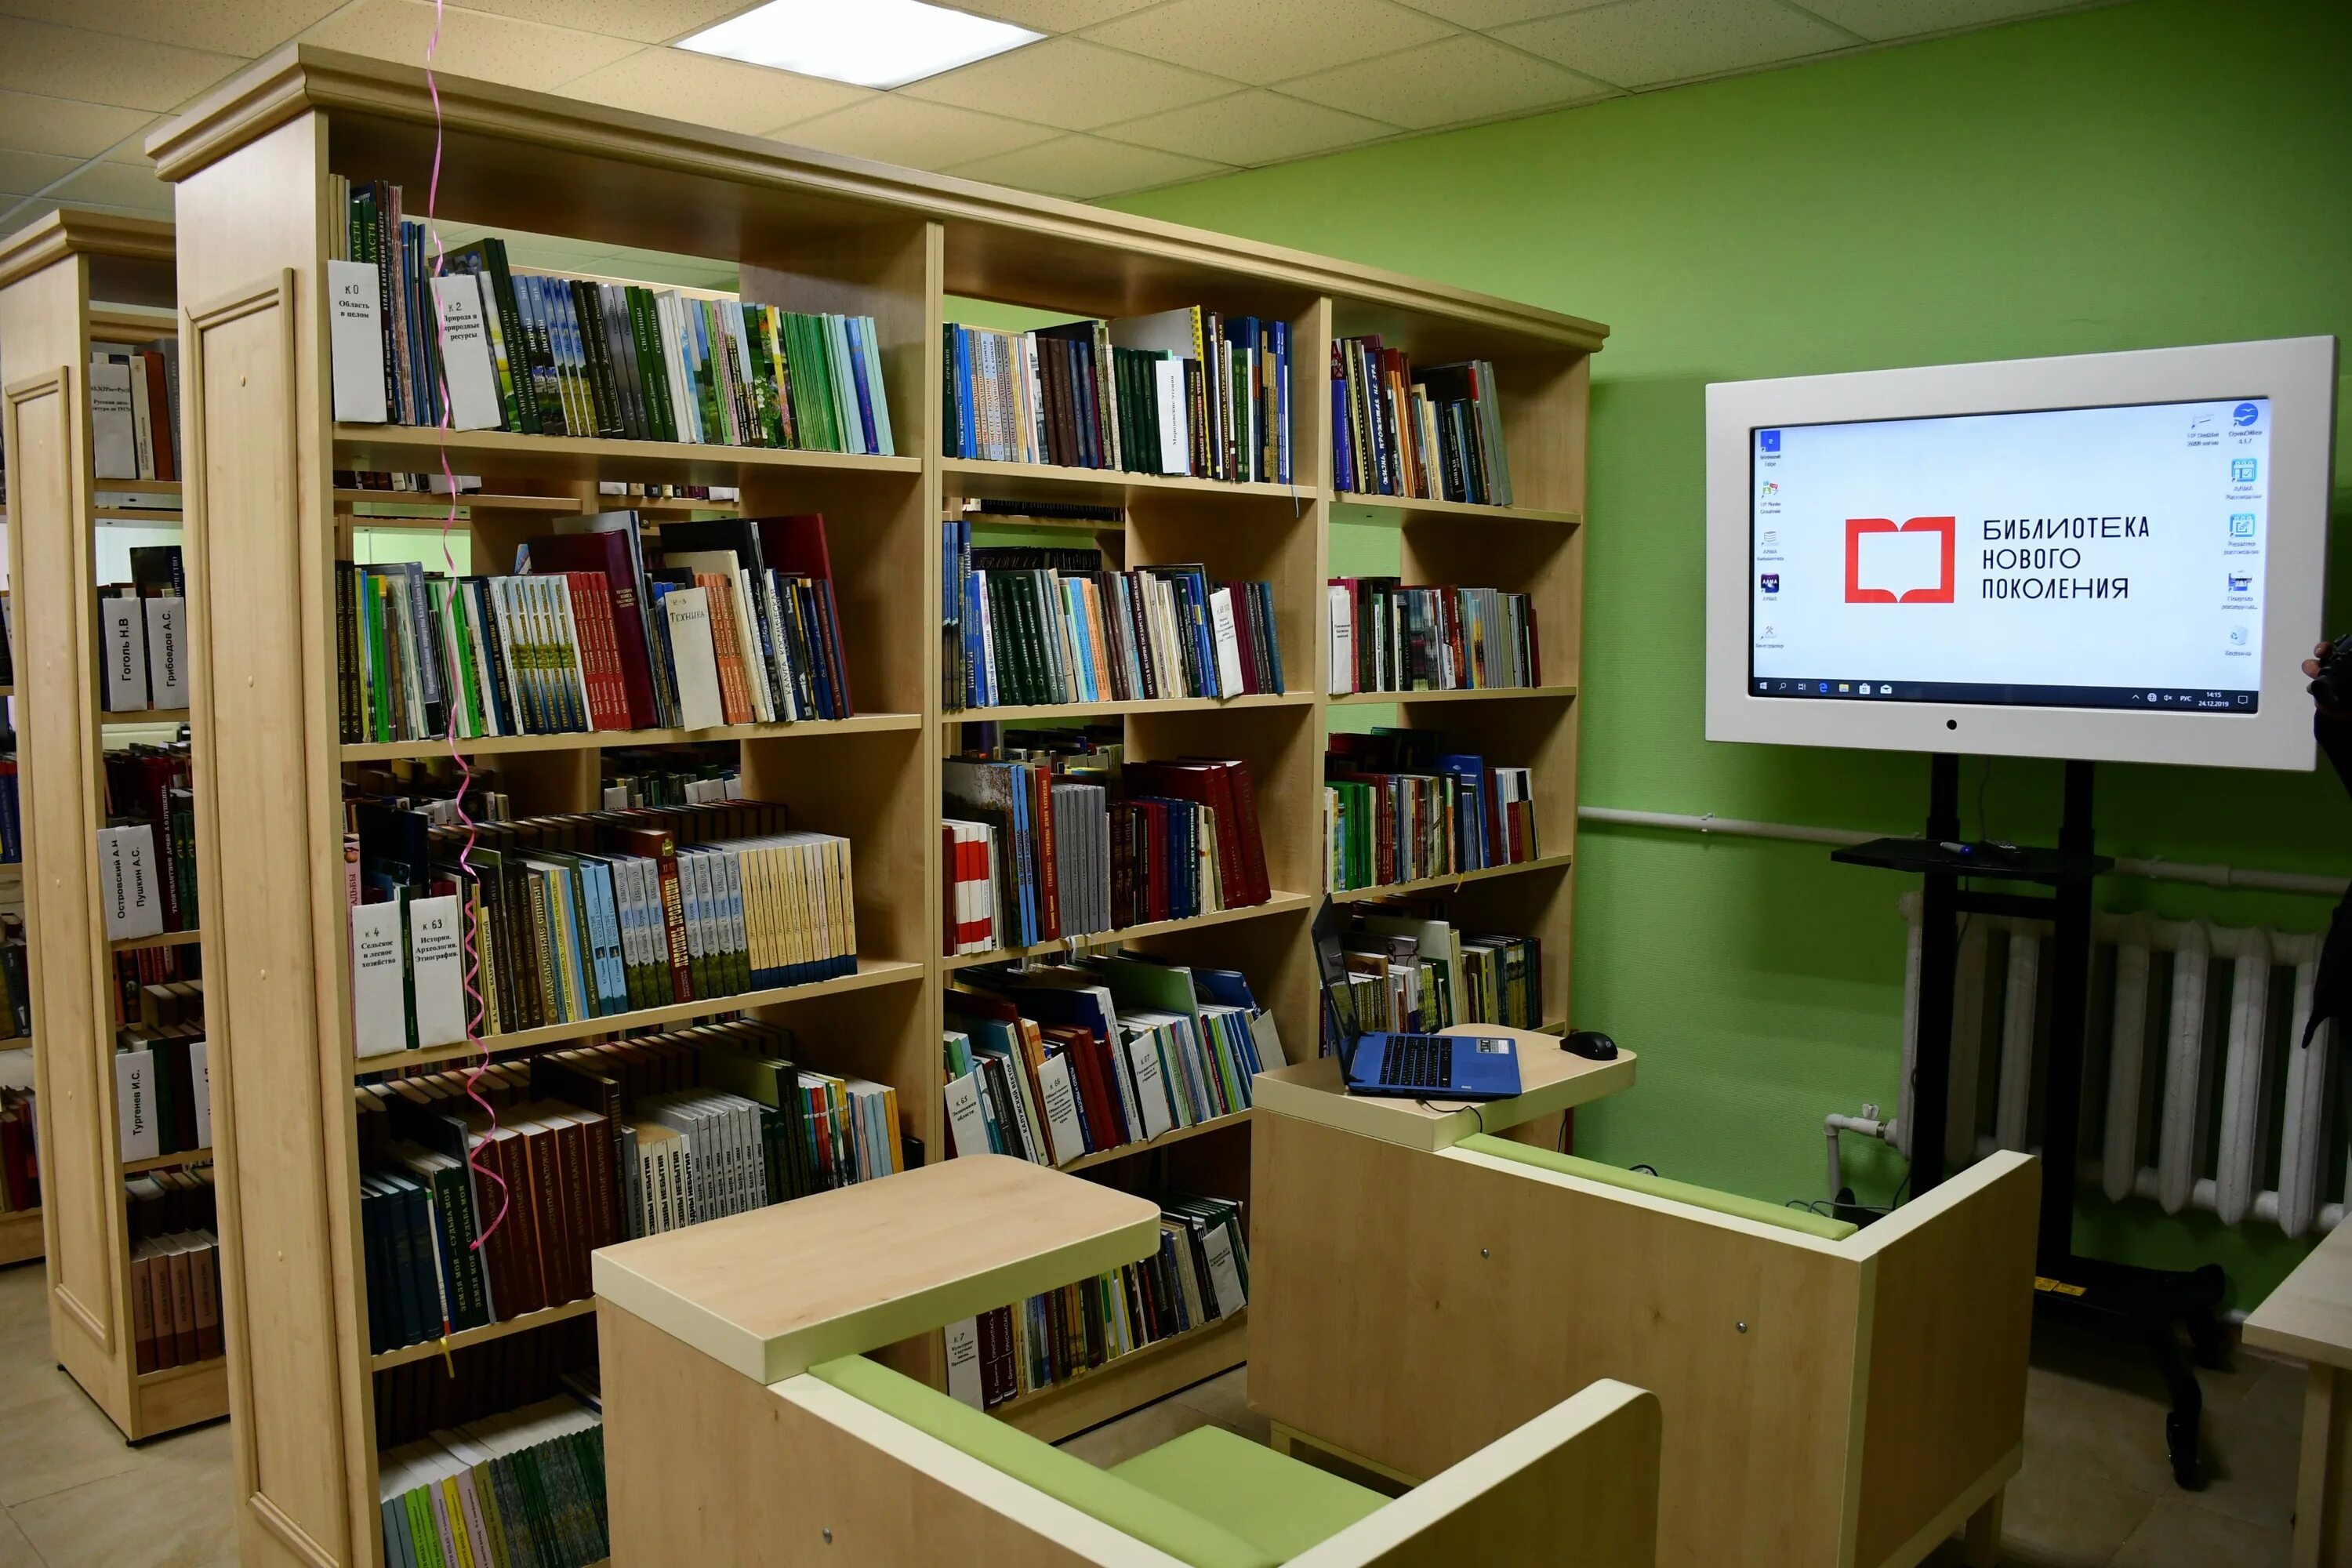 Центральная библиотека рф. Модельная библиотека. Библиотека нового поколения. Муниципальная библиотека. Современная Российская библиотека.